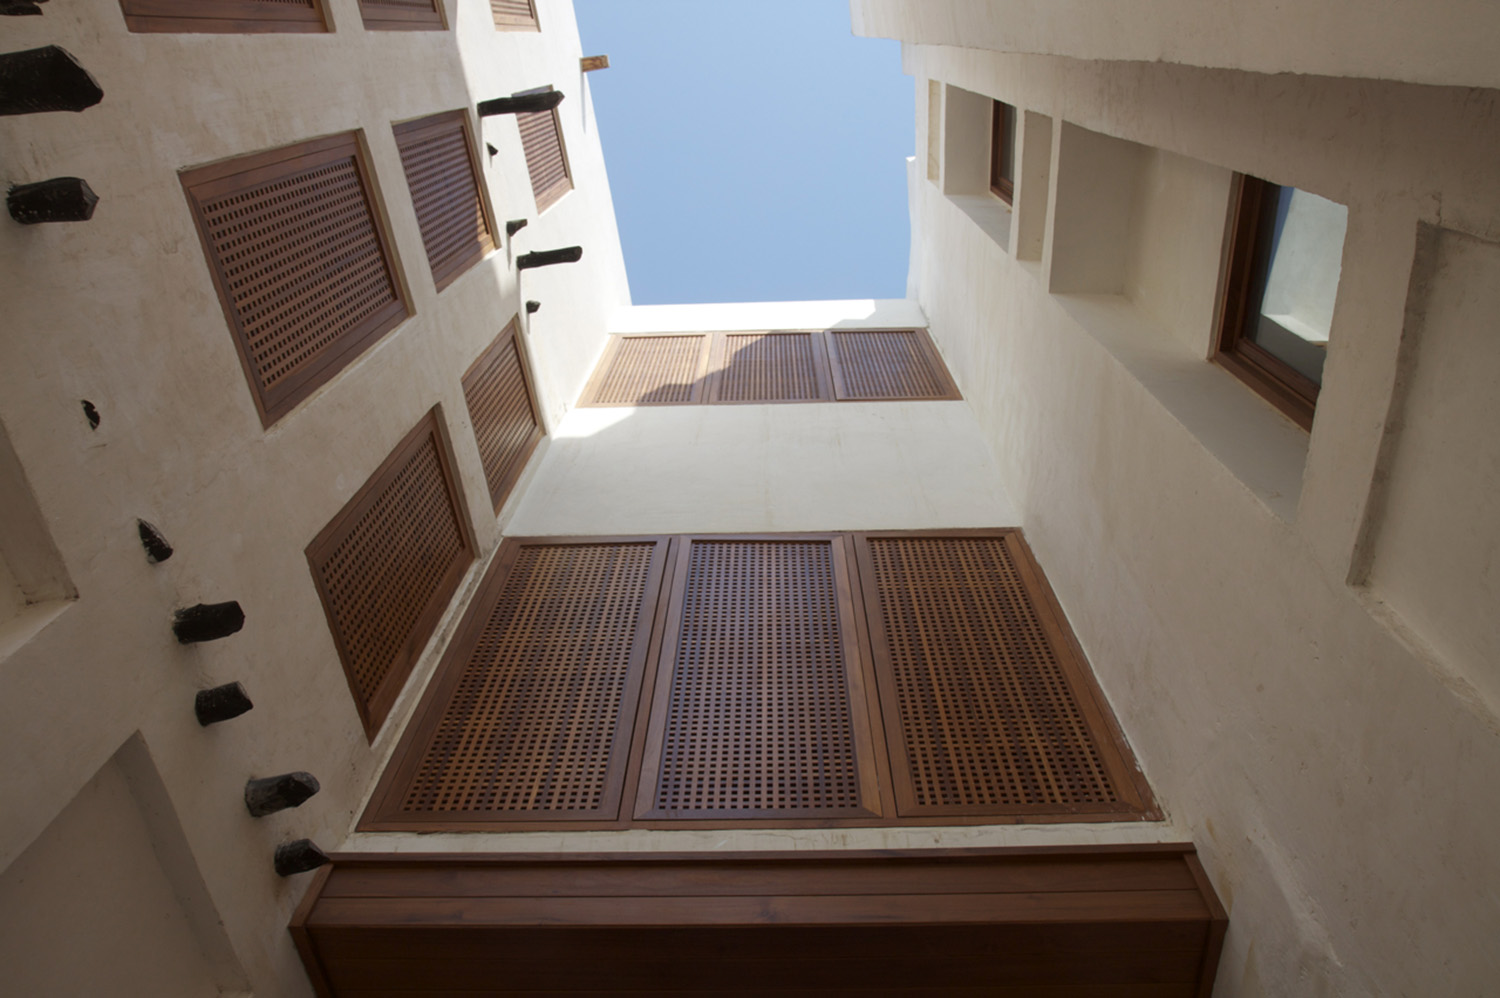 Al-Najada Boutique Hotel - Bottom view of interior facades  